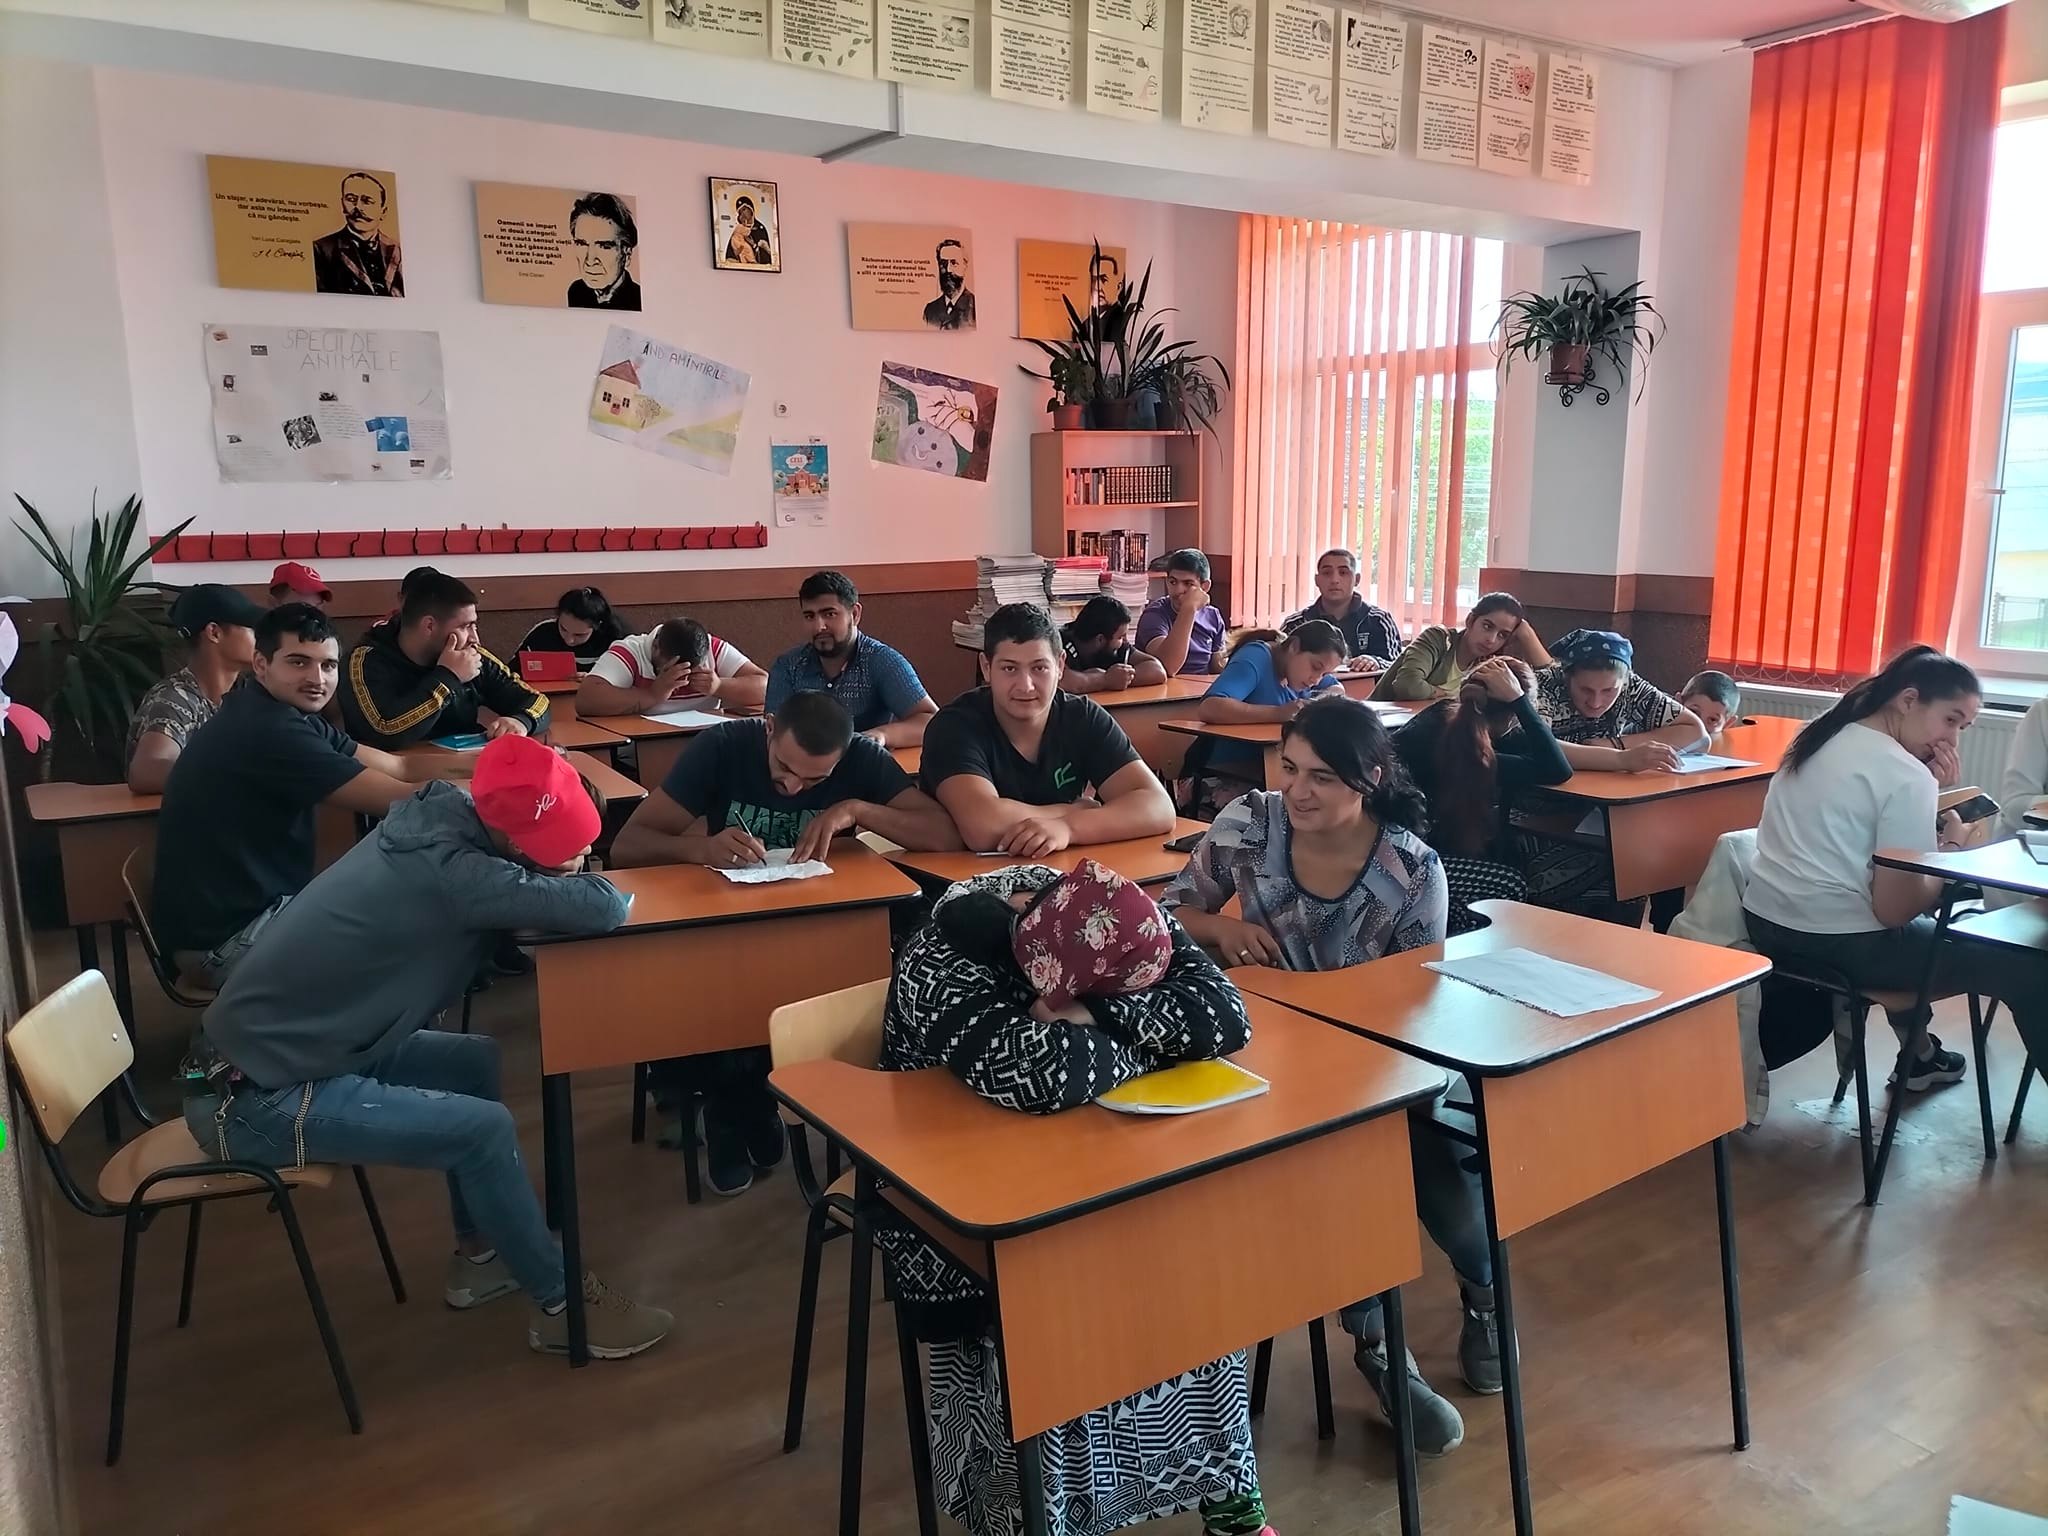 Copiii romi și educația în școli